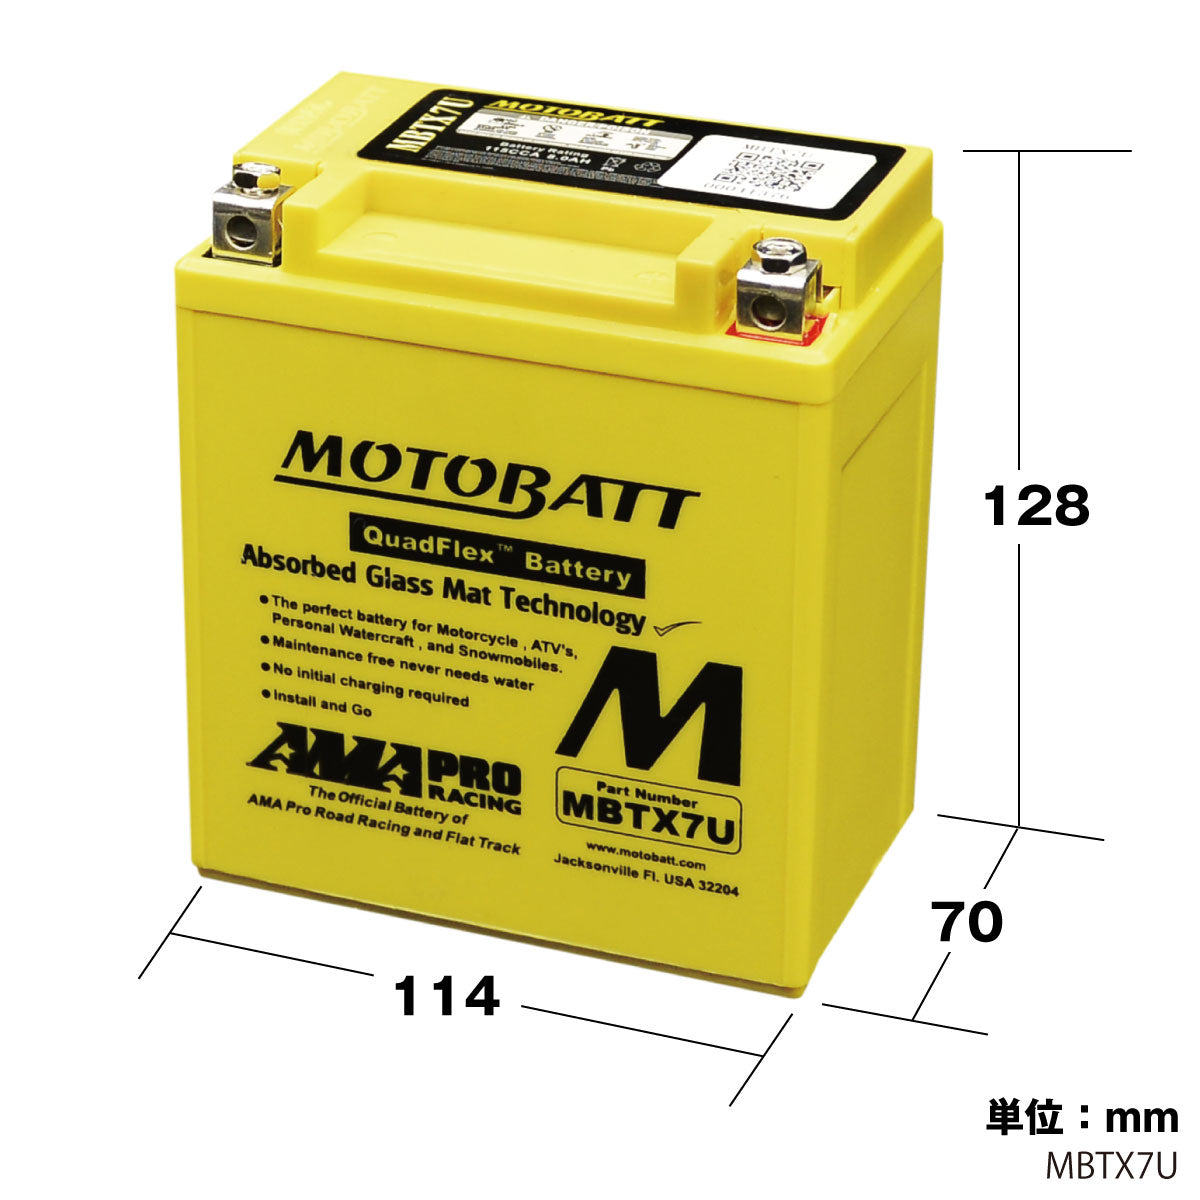 バッテリー MBTX7U モトバット バイク オートバイ モーターサイクル 初期充電済 即使用可能 メンテナンスフリー MOTOBATT